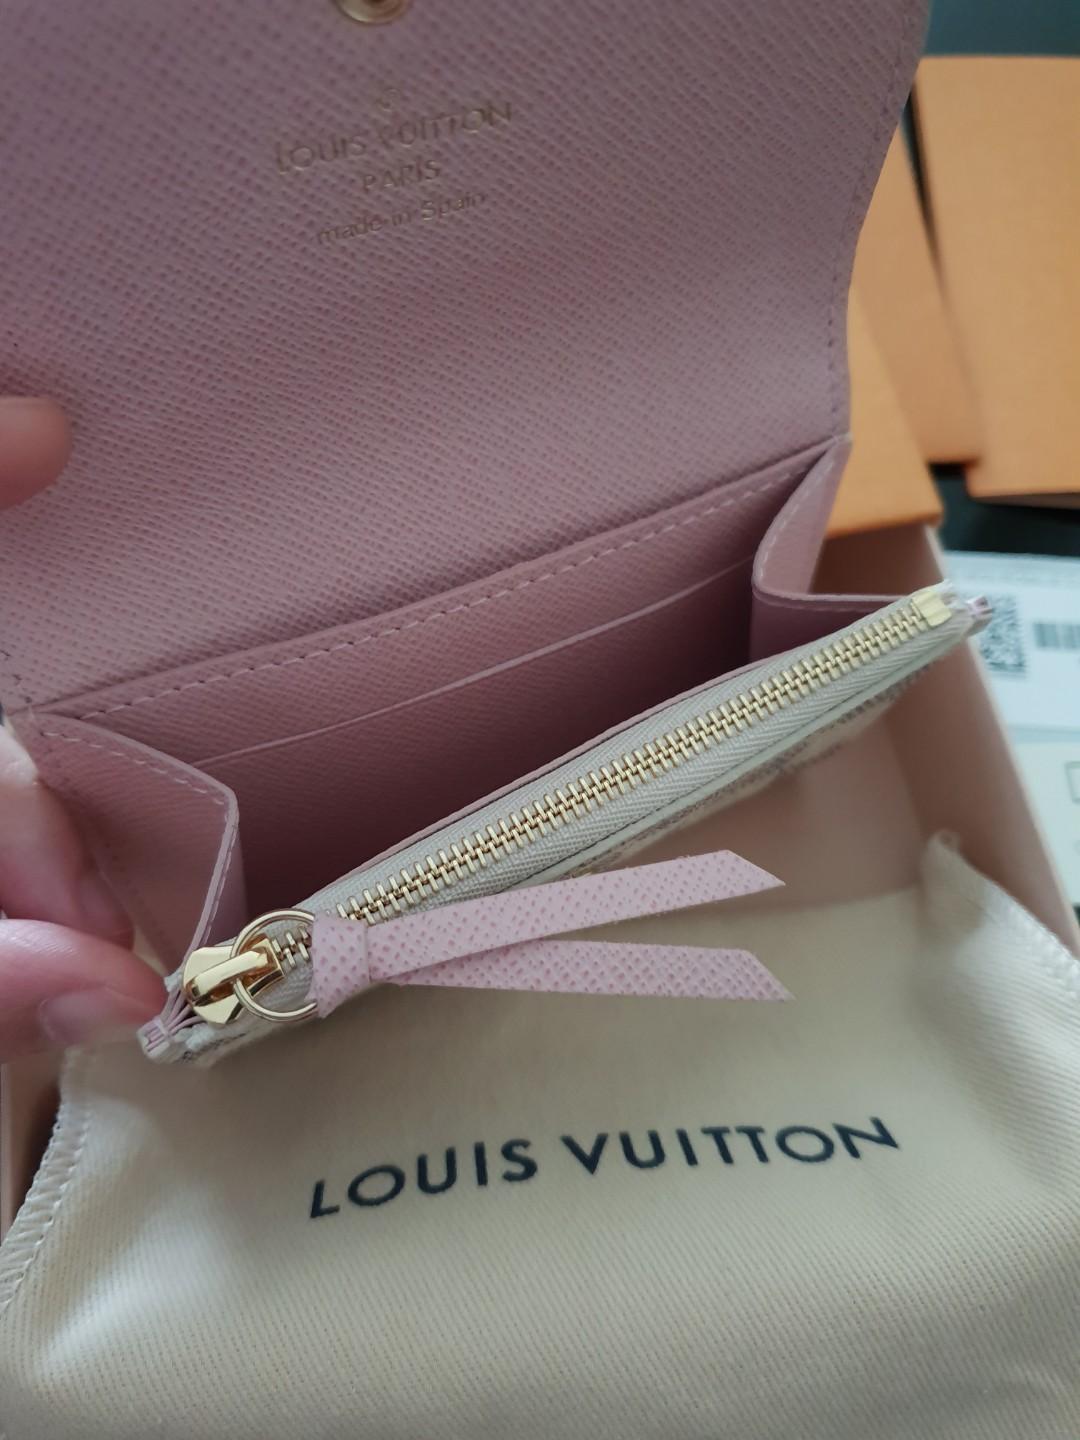 Authentic Louis Vuitton Ellipse - Clothes Mentor Fargo